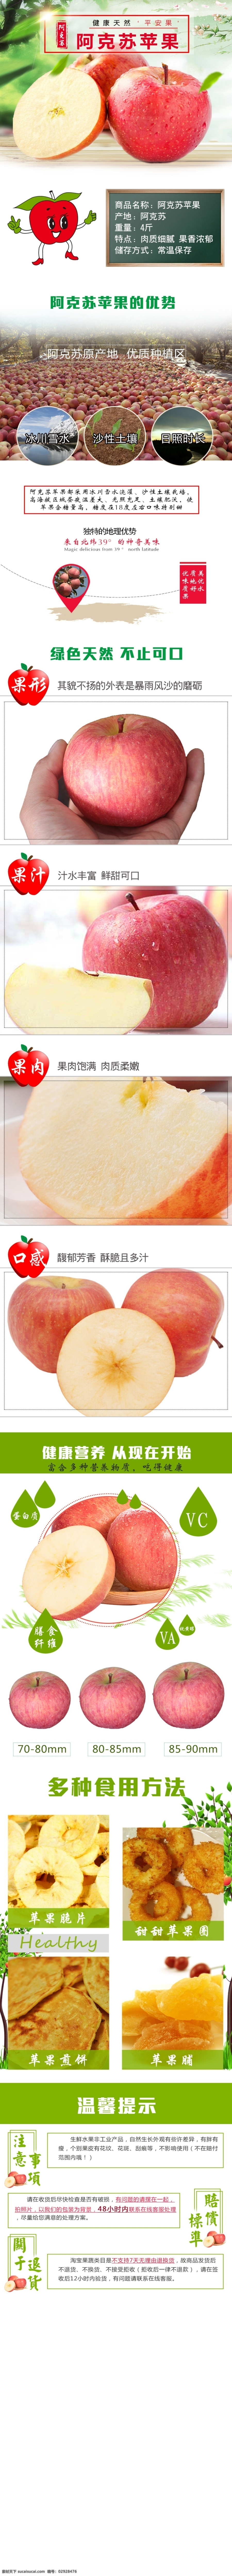 苹果详情页 苹果详情 冰糖心苹果 水果详情